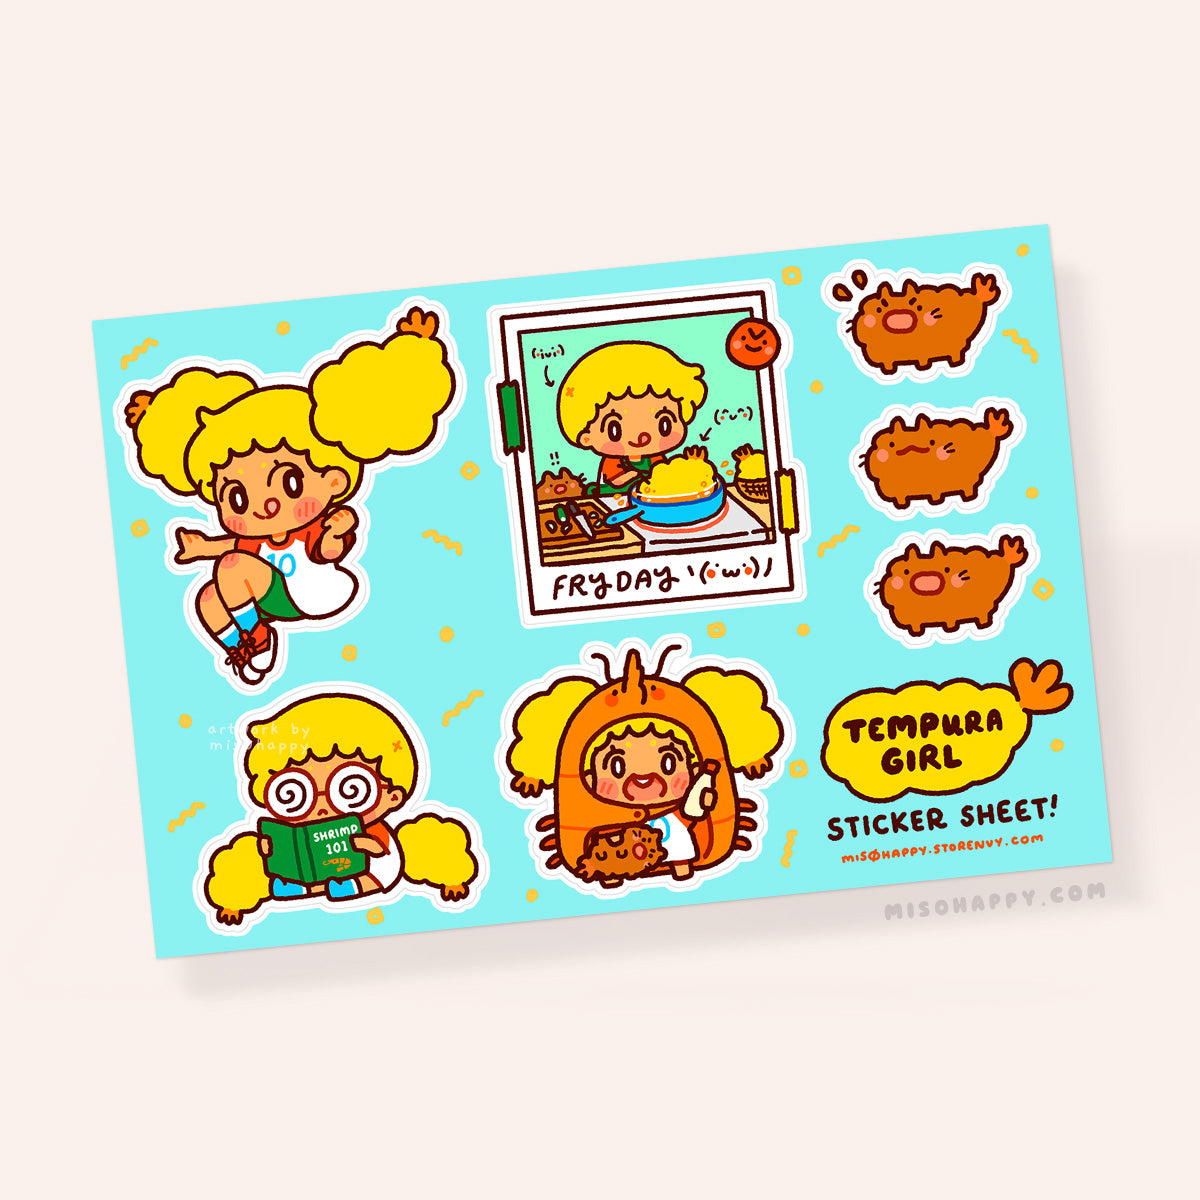 "Tempura Girl" Sticker Sheet